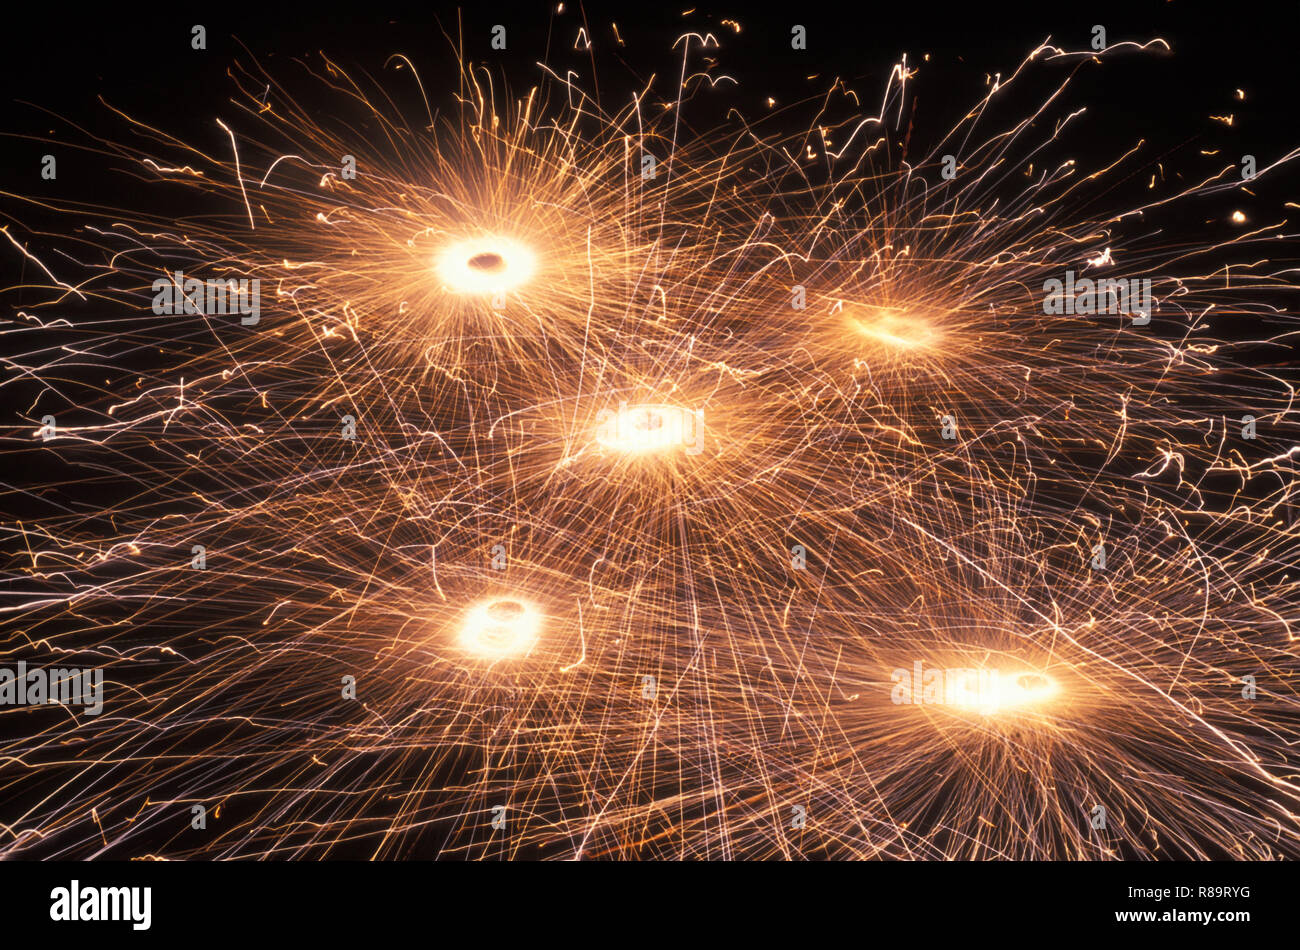 Diwali festival fireworks in India Stock Photo